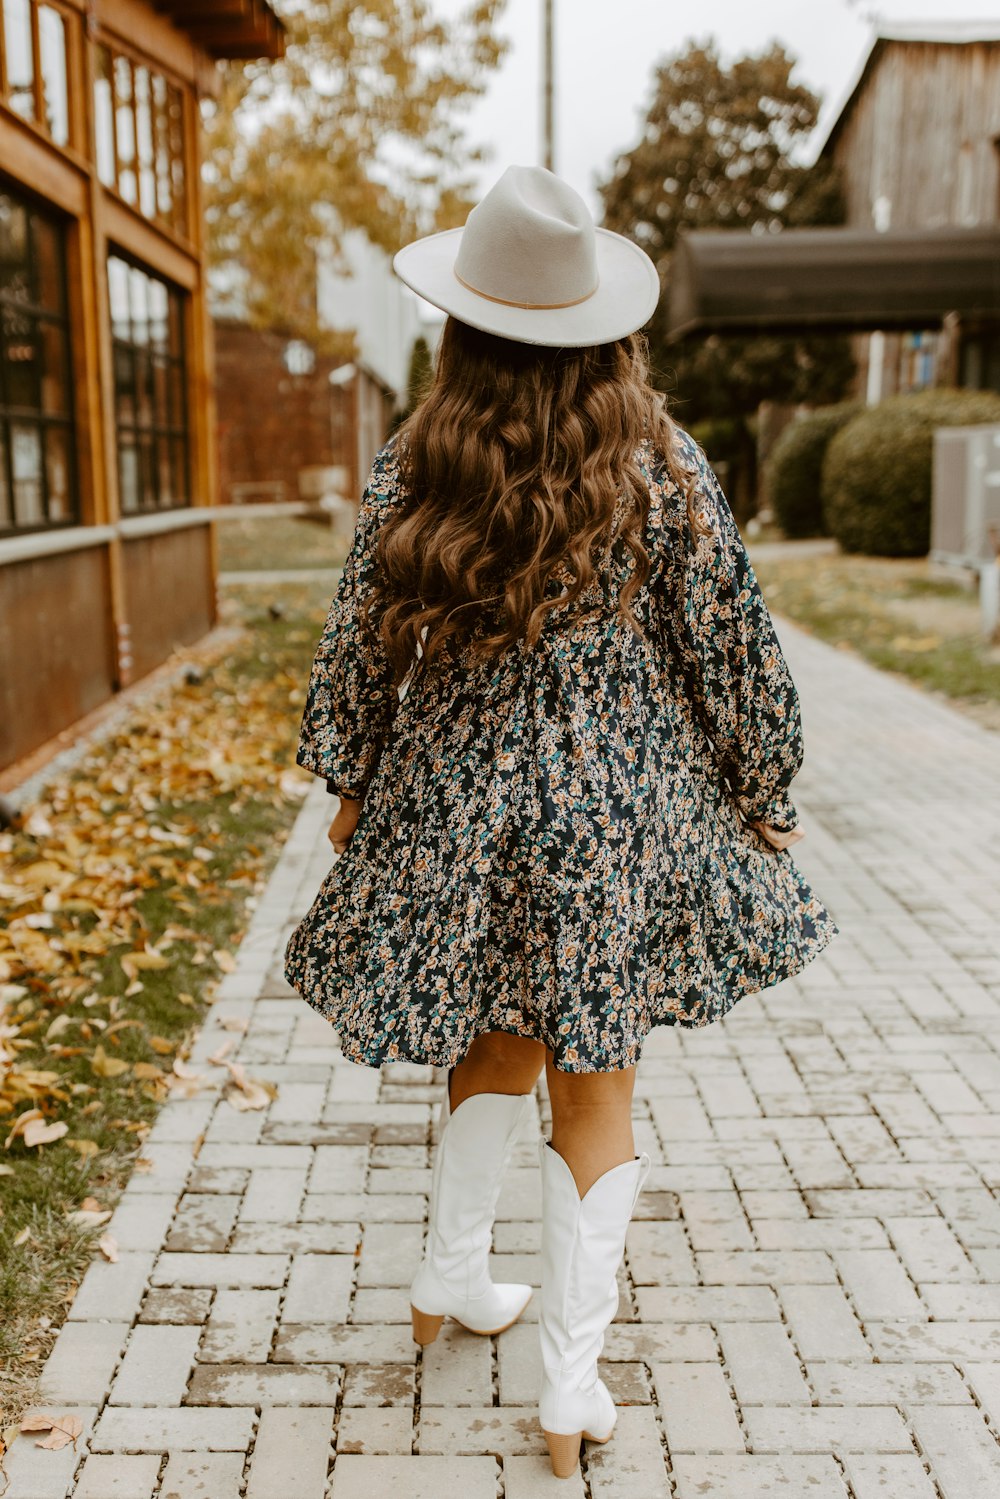 une femme marchant sur un trottoir avec des bottes blanches